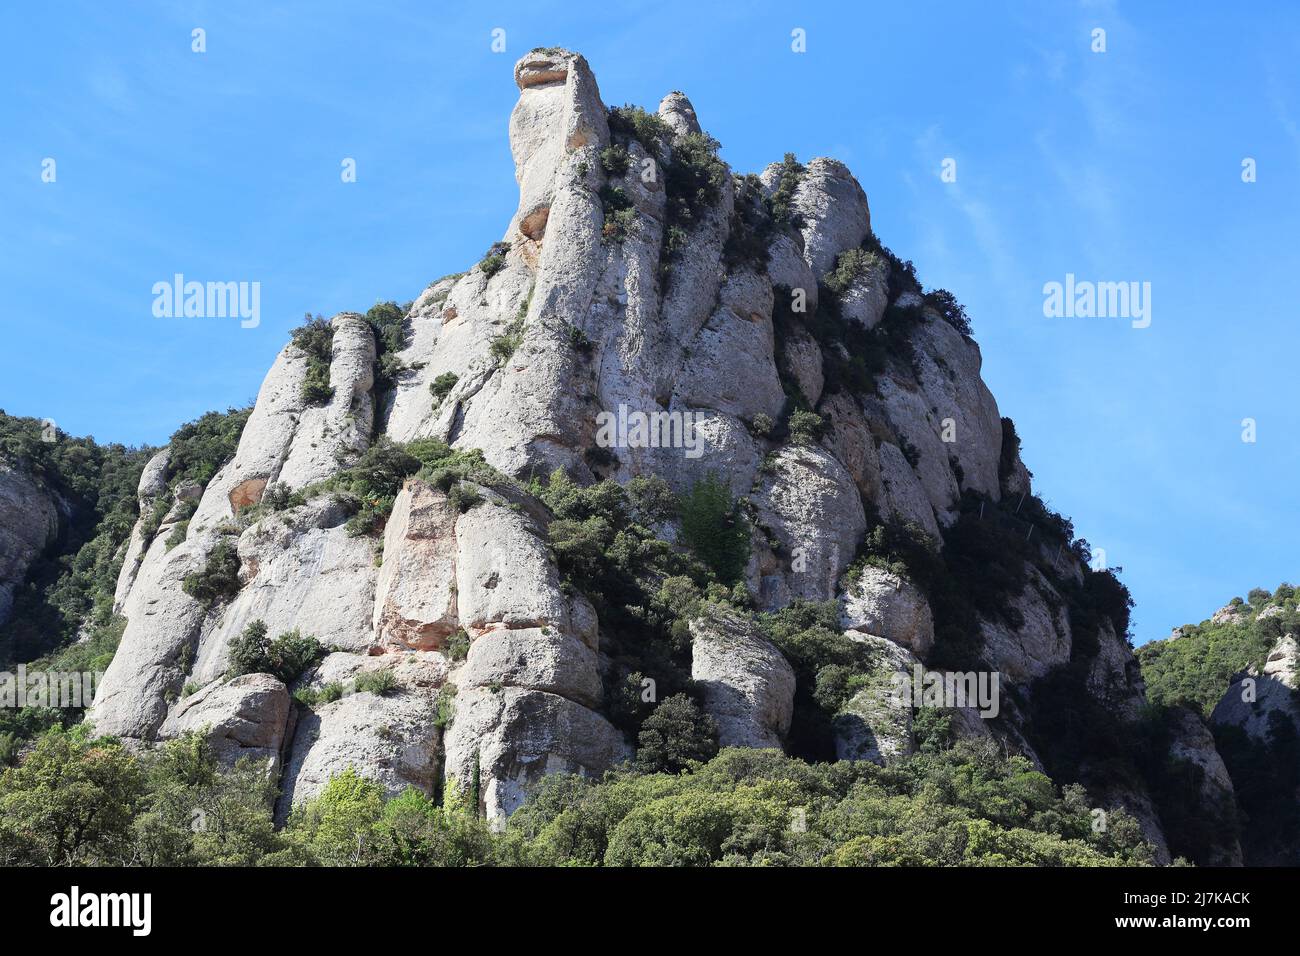 Es handelt sich um ungewöhnlich große bizarre kahle Felsen des heiligen Berges Montserrat in Spanien. Stockfoto